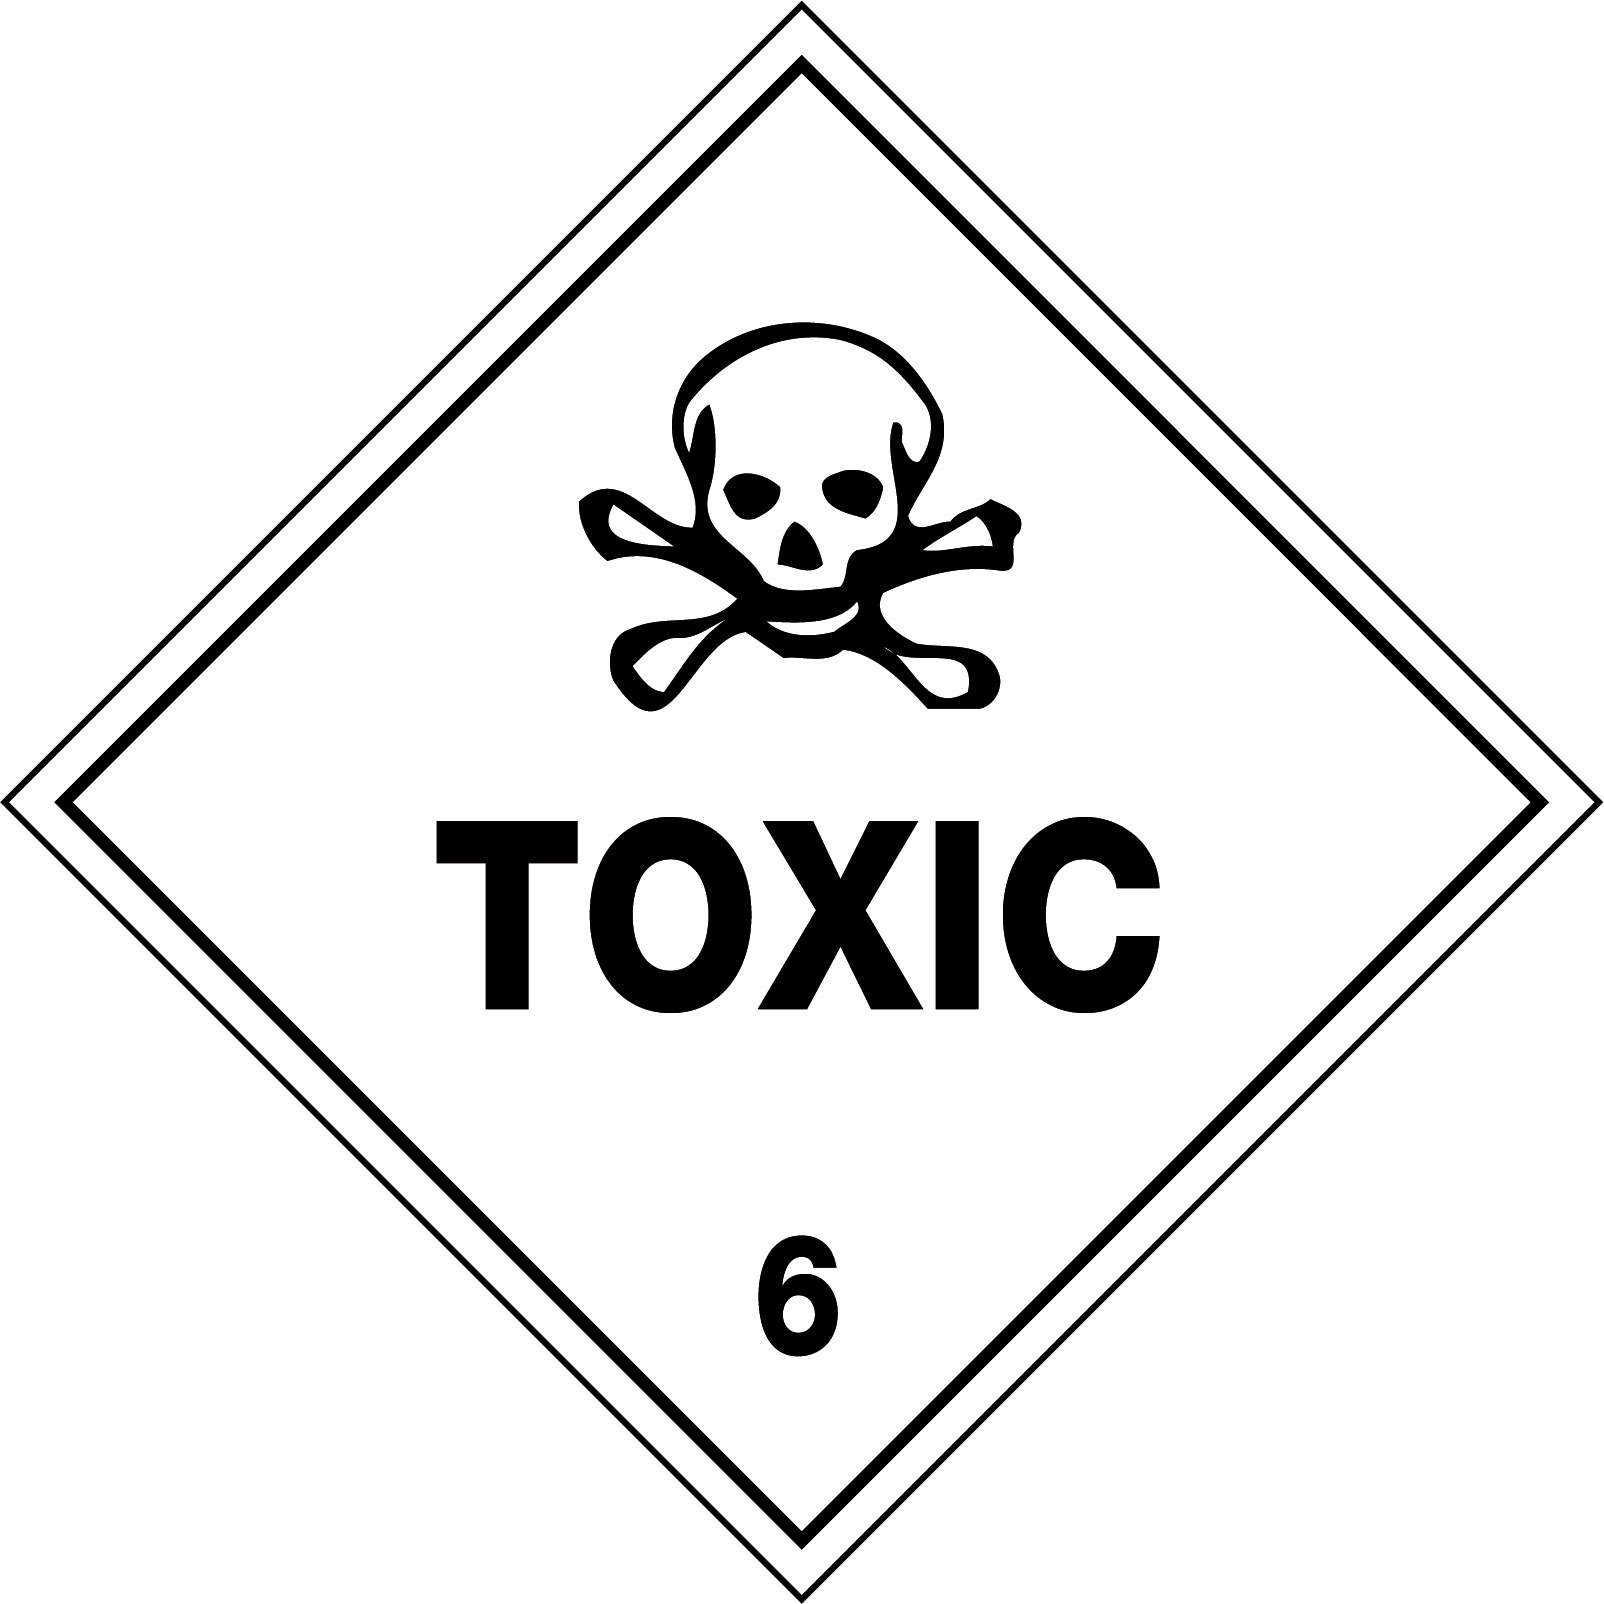 Токсис расстался. Знак токсично. Осторожно токсично. Осторожно Токсик. Токсик - опасно.